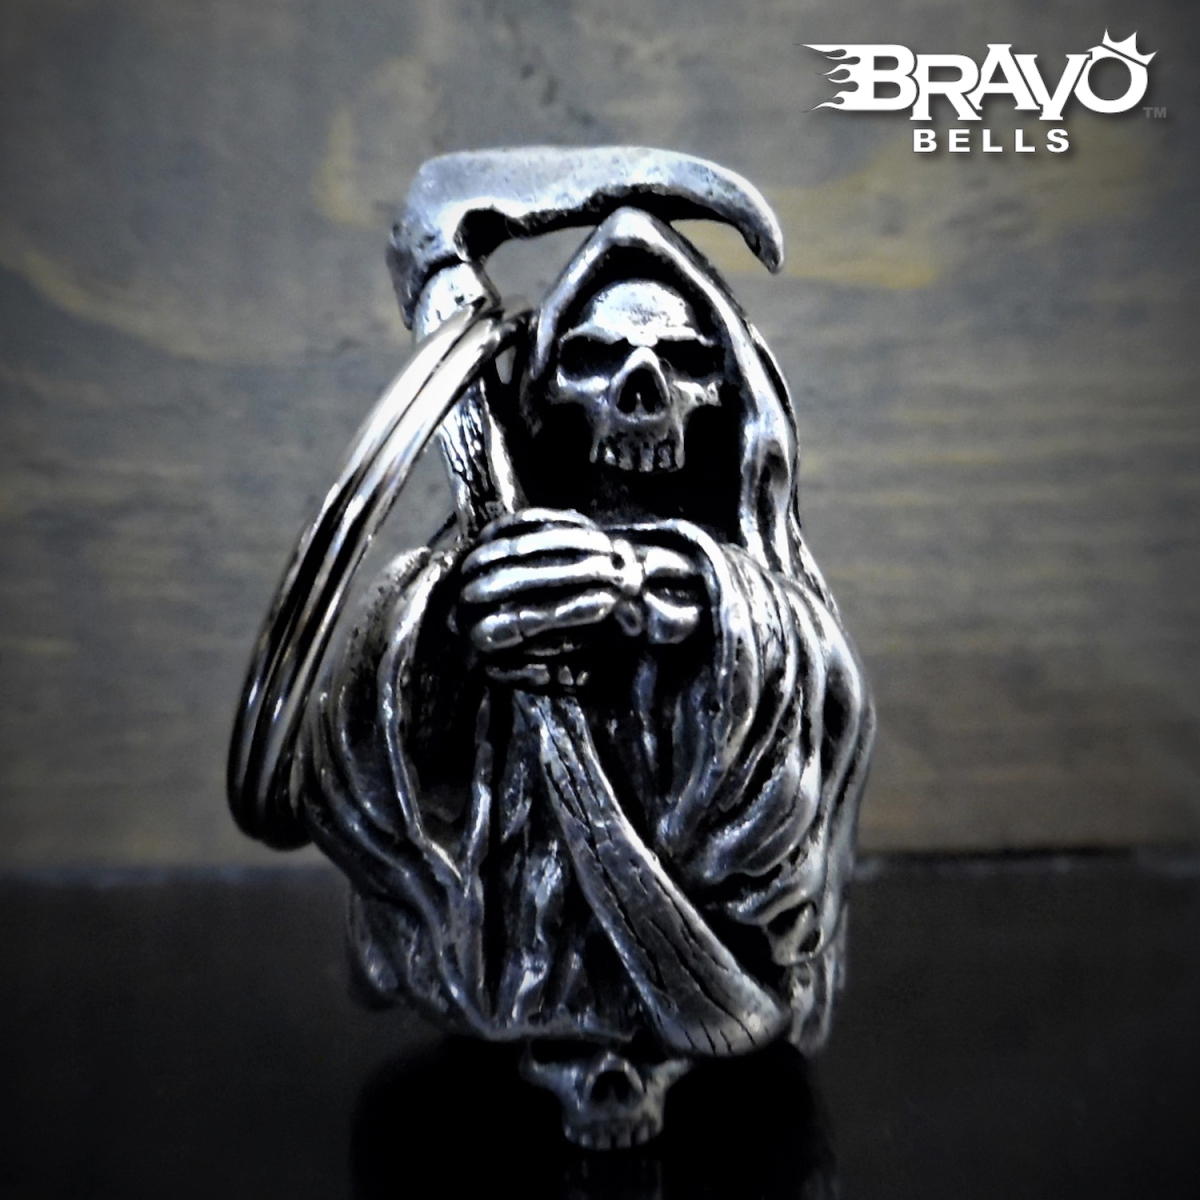 米国製 Bravo Bells 死神 3D ベル [Grim Reaper] Made in USA 魔除け お守り バイク オートバイ 鈴 アクセサリー ガーディアンベル_画像1